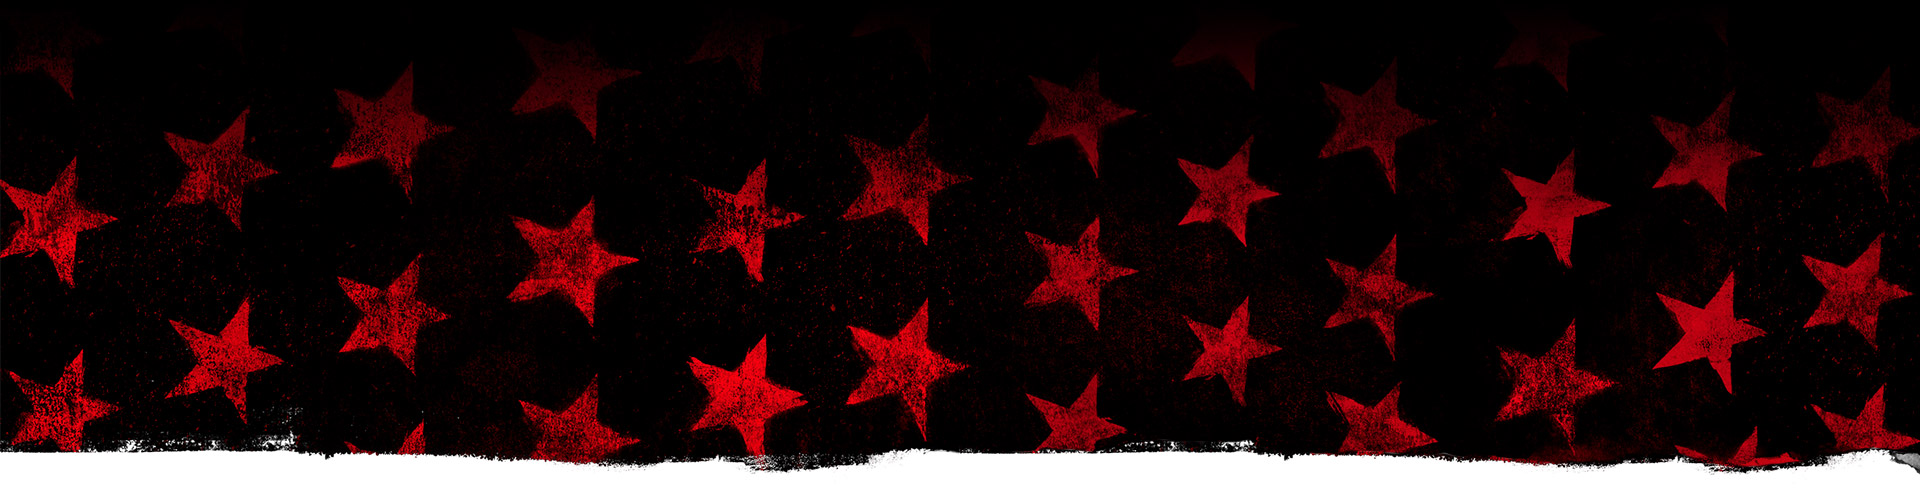 Красные звезды на черном фоне.